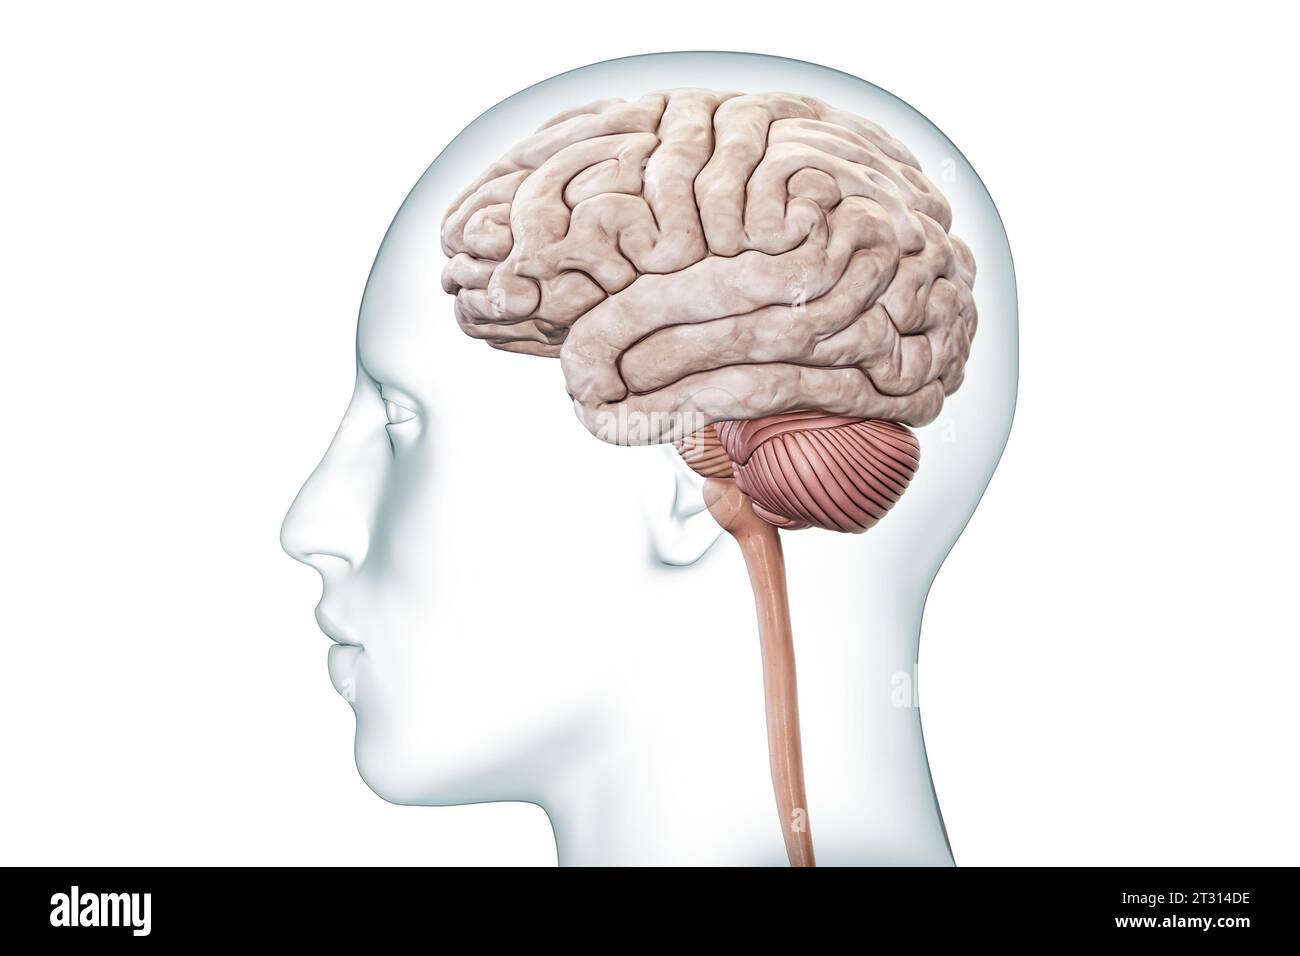 Menschliches Gehirn mit Kleinhirn- und Hirnstamm-Profilansicht mit körpergenauer 3D-Darstellung. Neurologie, Neurowissenschaft, Anatomie, medizinisches Diagramm Stockfoto